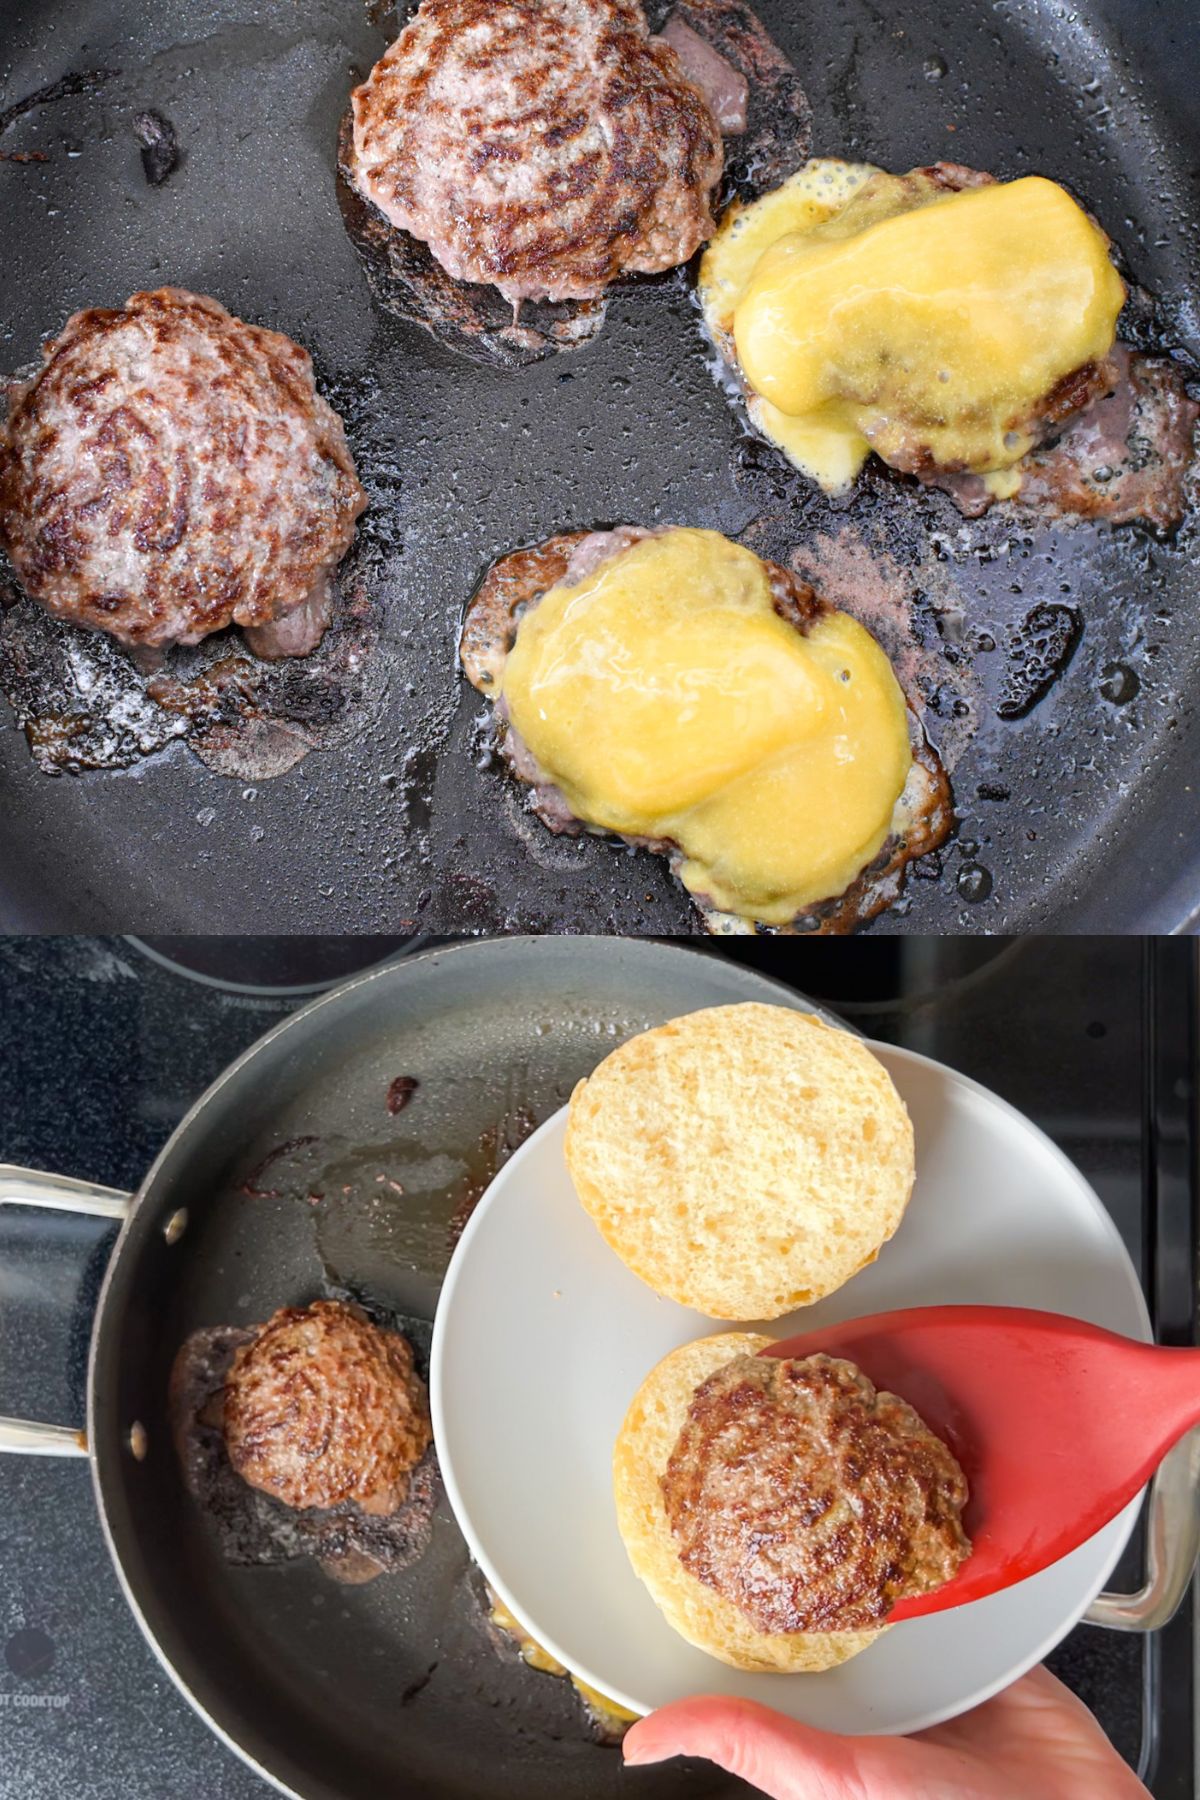 A pan cooking hamburgers and putting a hamburger on a bun.